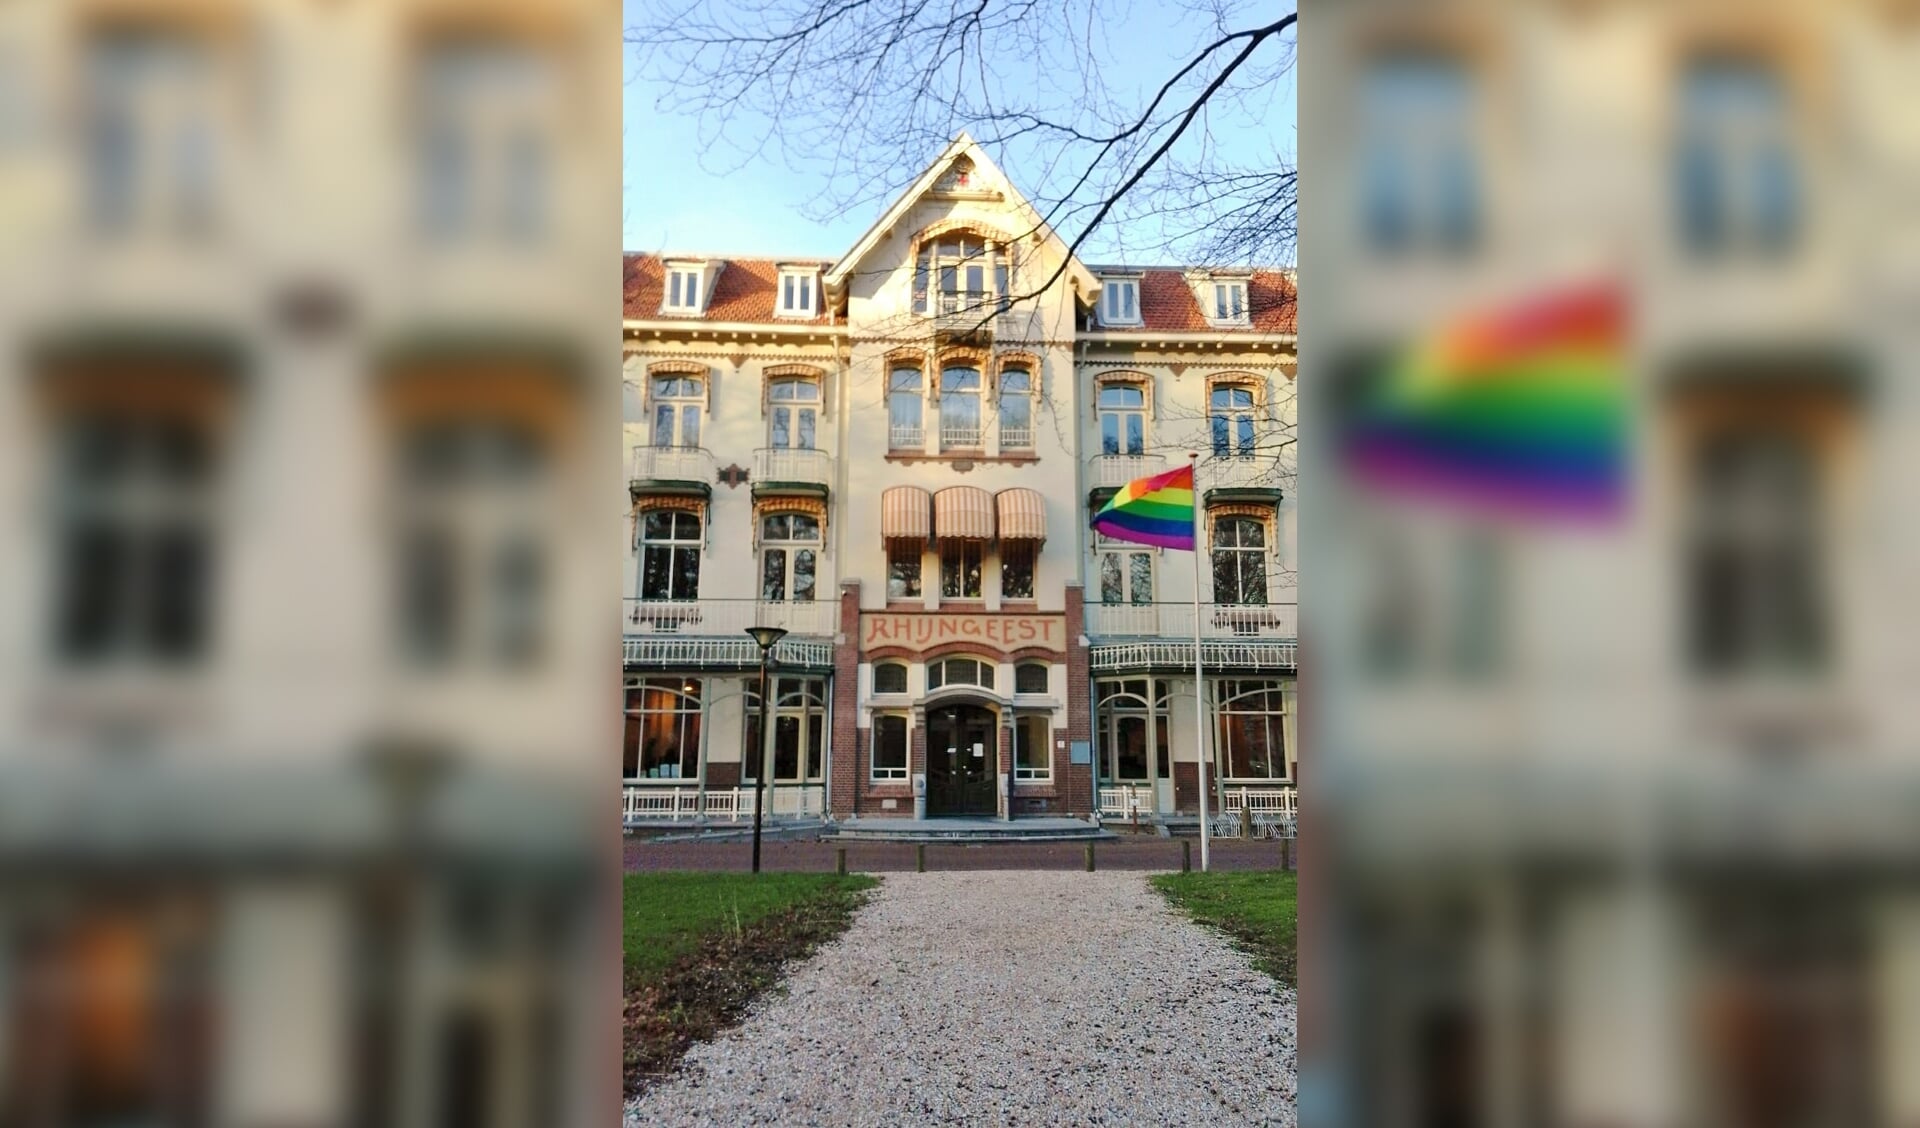 Voor het Oegstgeester gemeentehuis wappert de regenboogvlag.